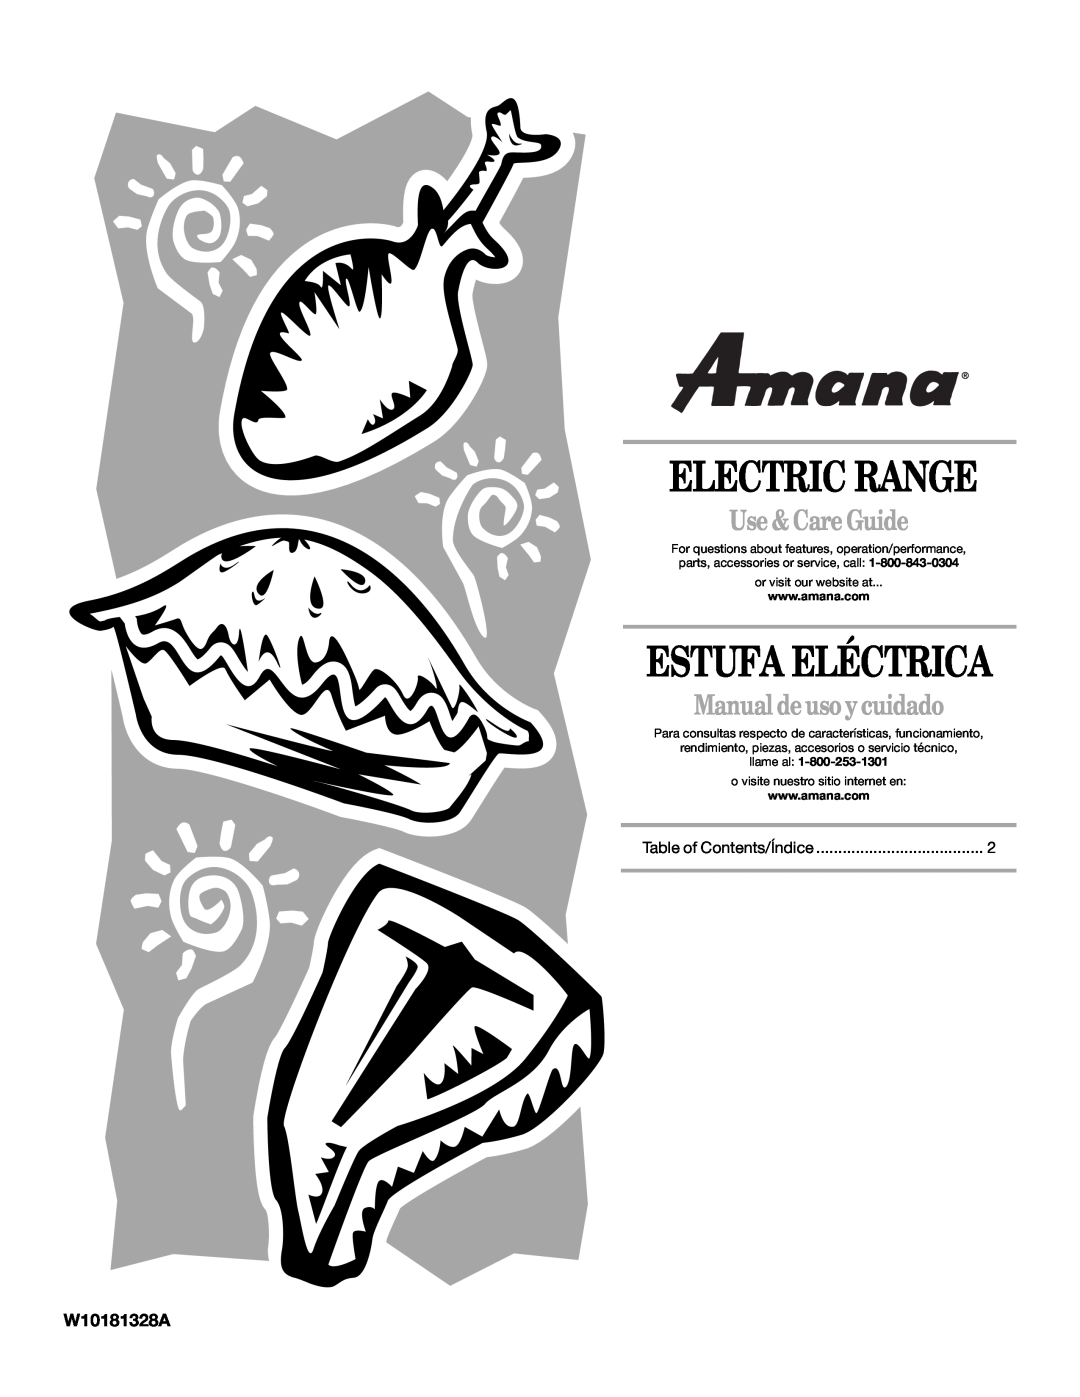 Amana AEP222VAW manual W10181328A, Electric Range, Estufa Eléctrica, Use & Care Guide, Manual deuso ycuidado, llame al 